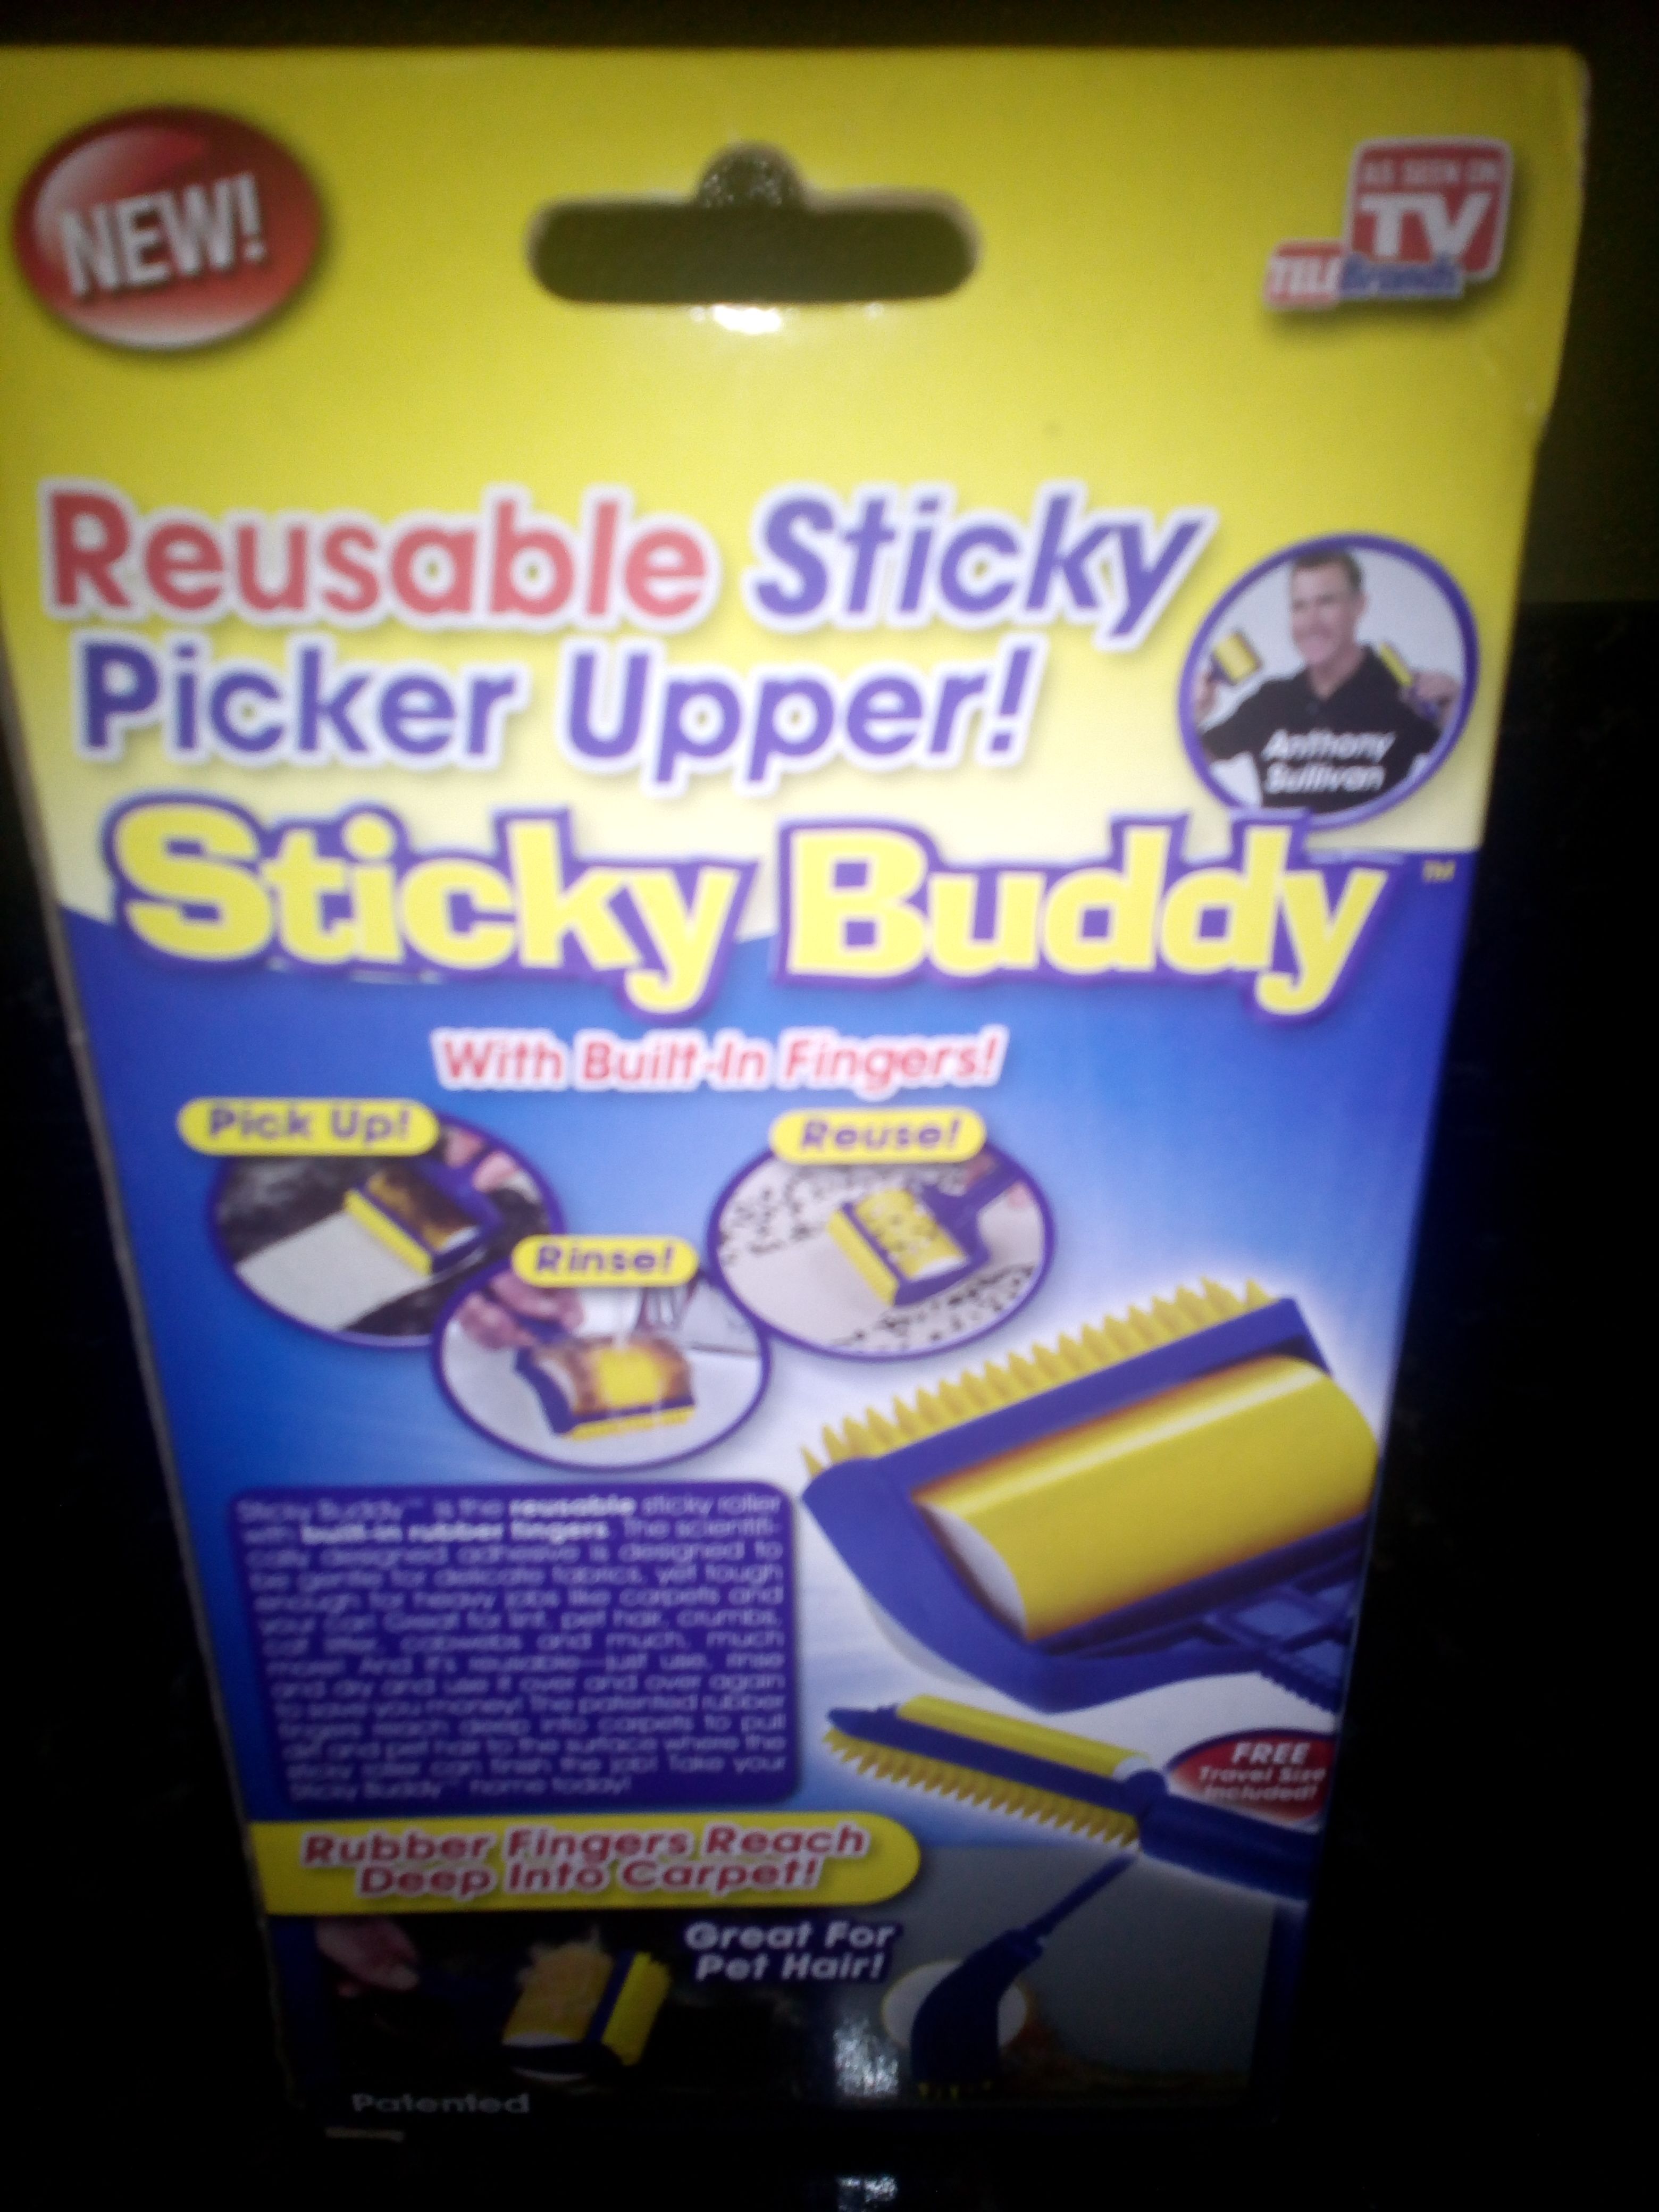 Sticky buddy